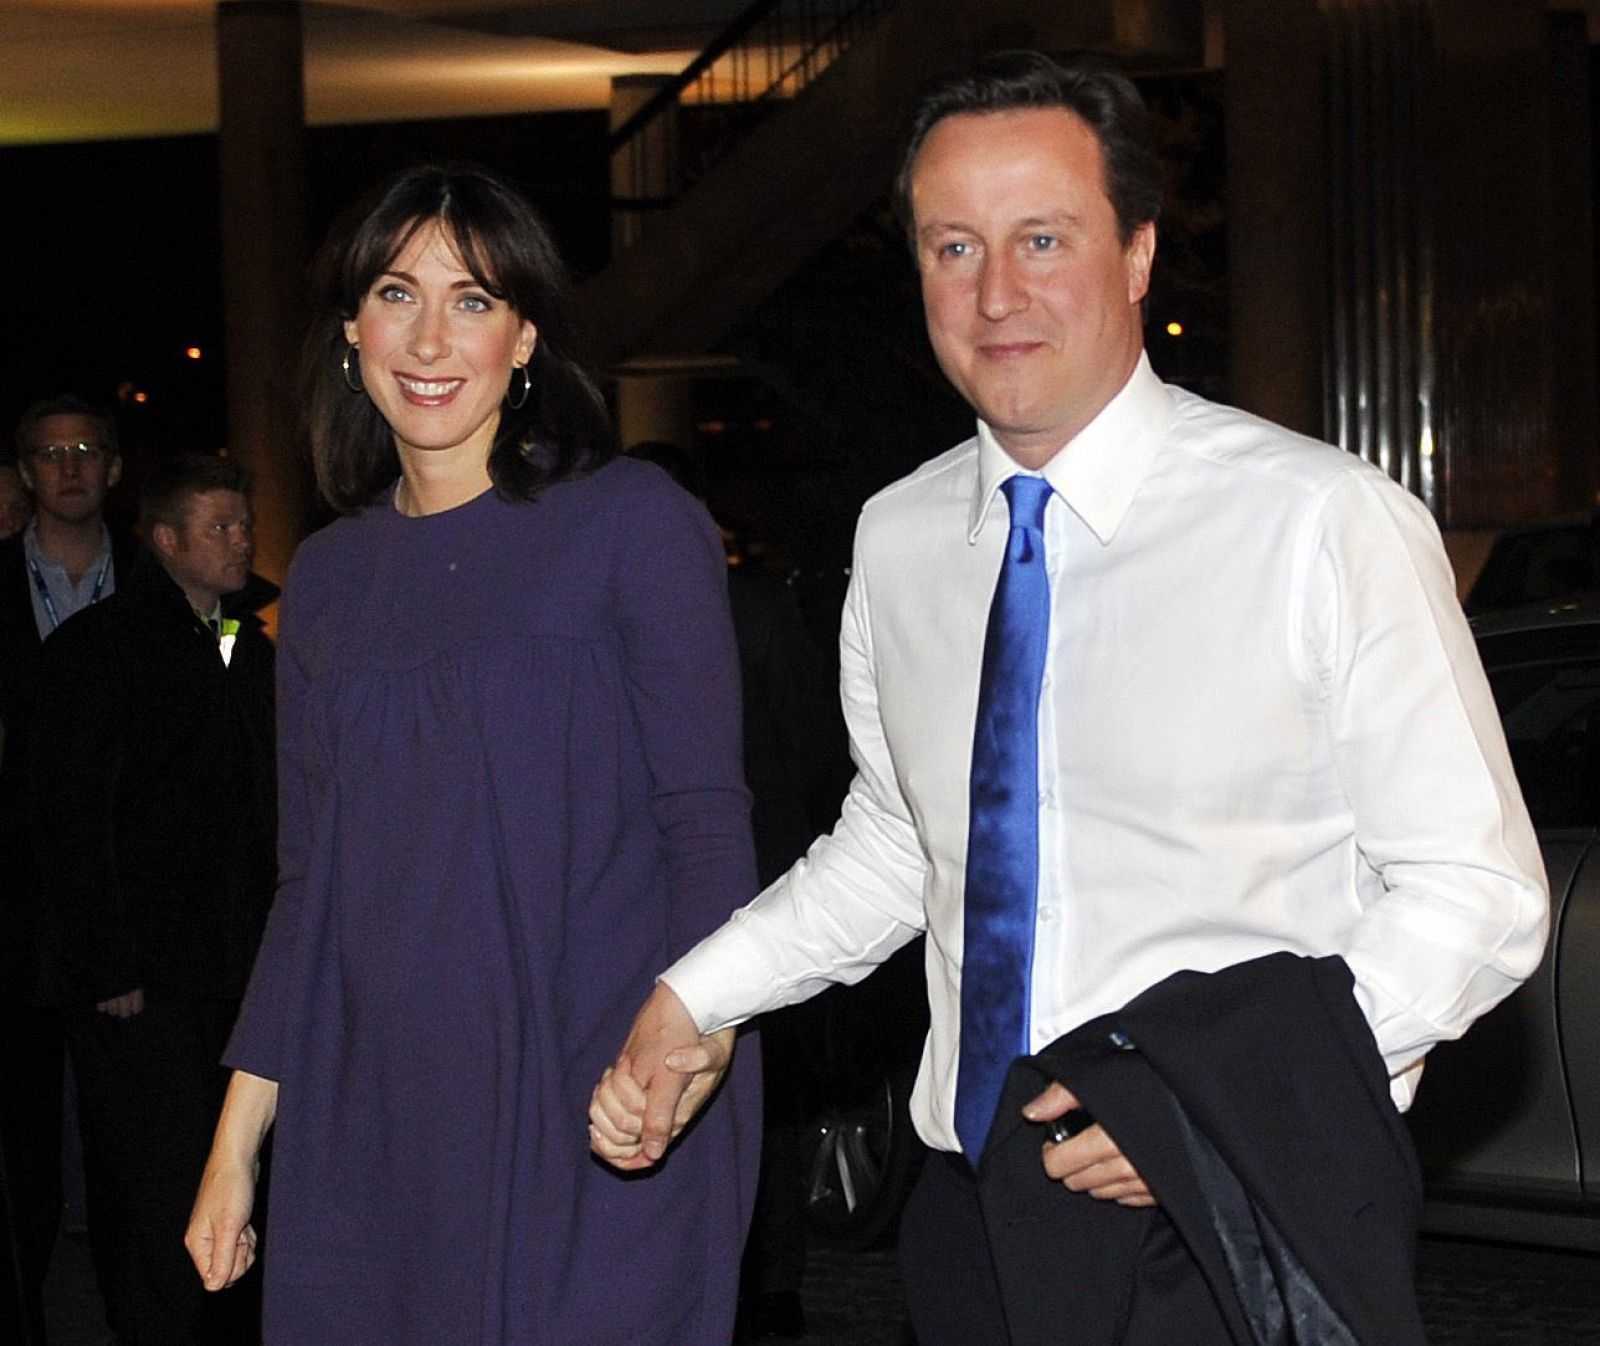 El líder del Partido Conservador, David Cameron, llega con su esposa, Samantha, a la sede de su formación política en Londres